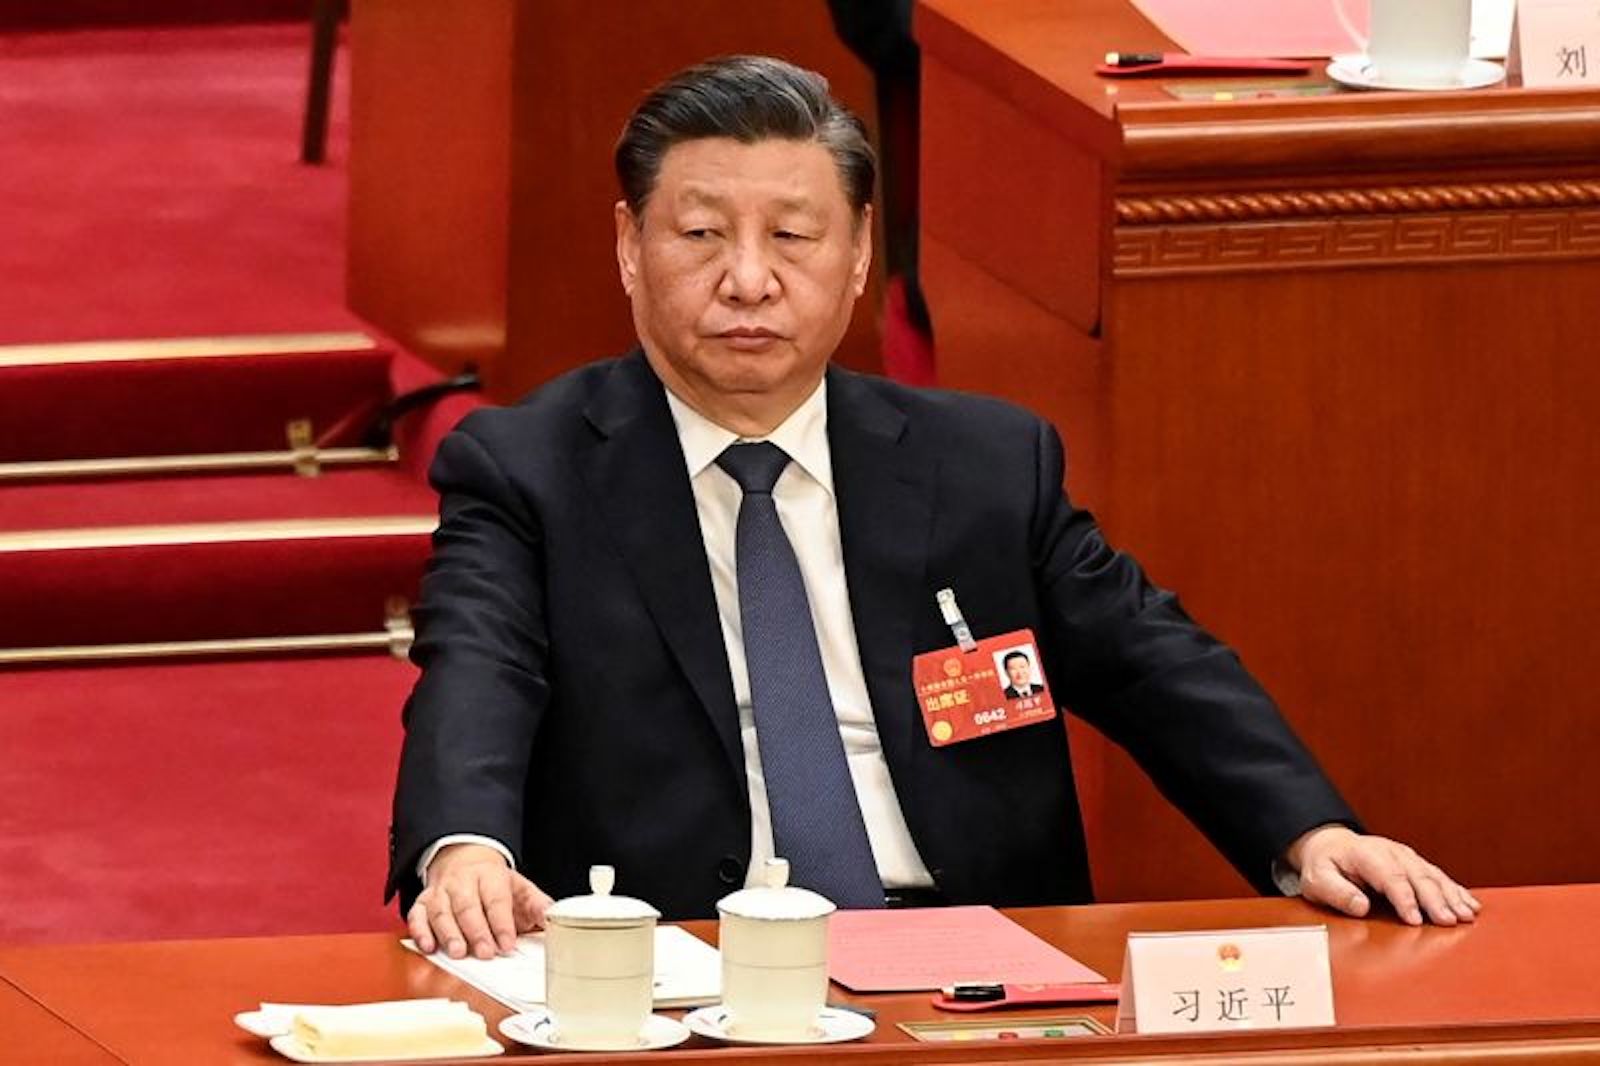 Xi Jinping Liderazgo China